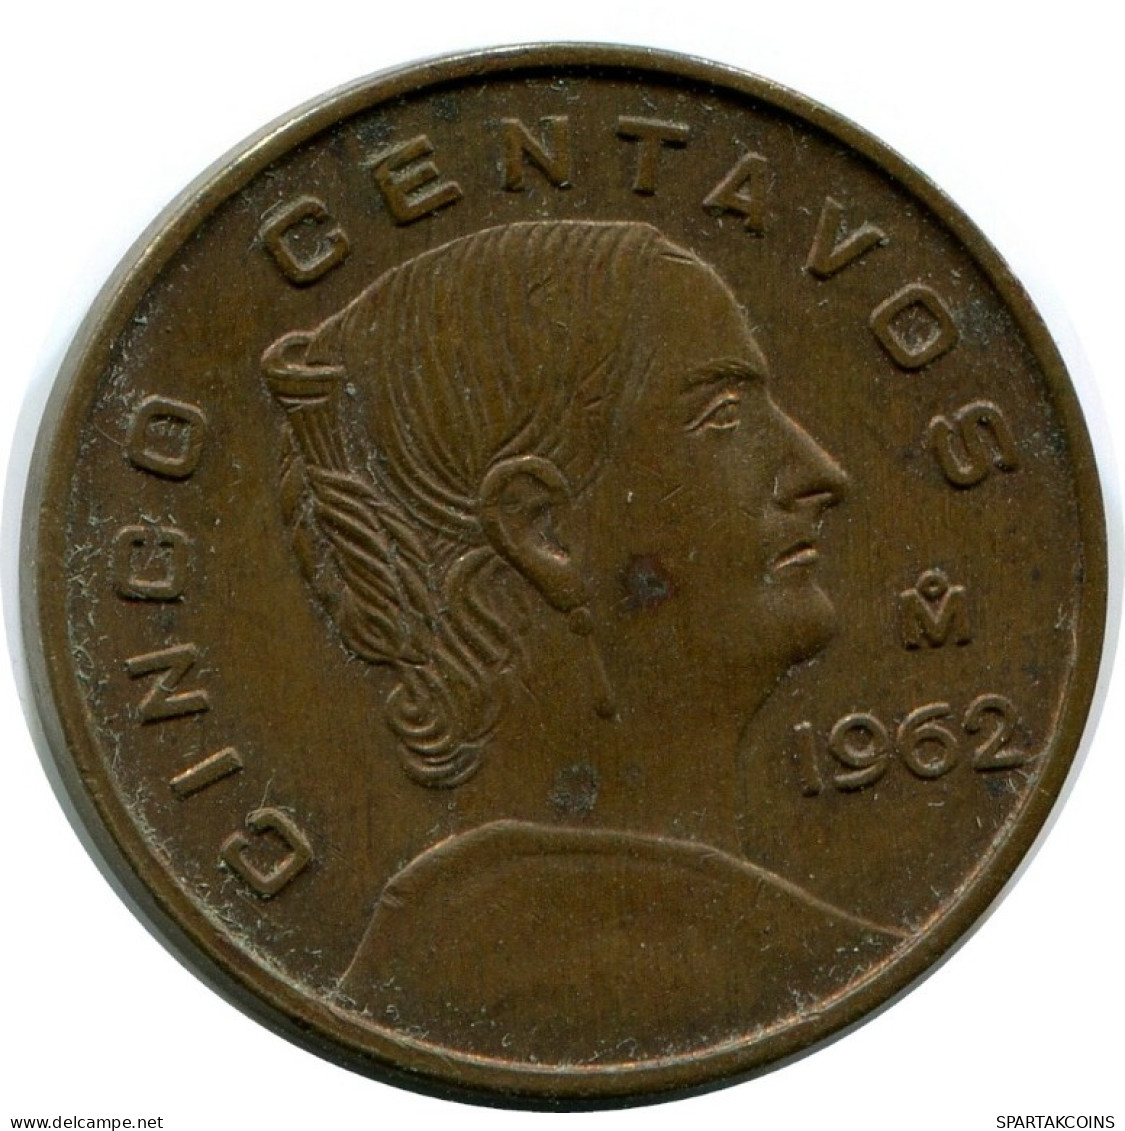 5 CENTAVOS 1963 MEXICO Moneda #AH438.5.E.A - Mexico